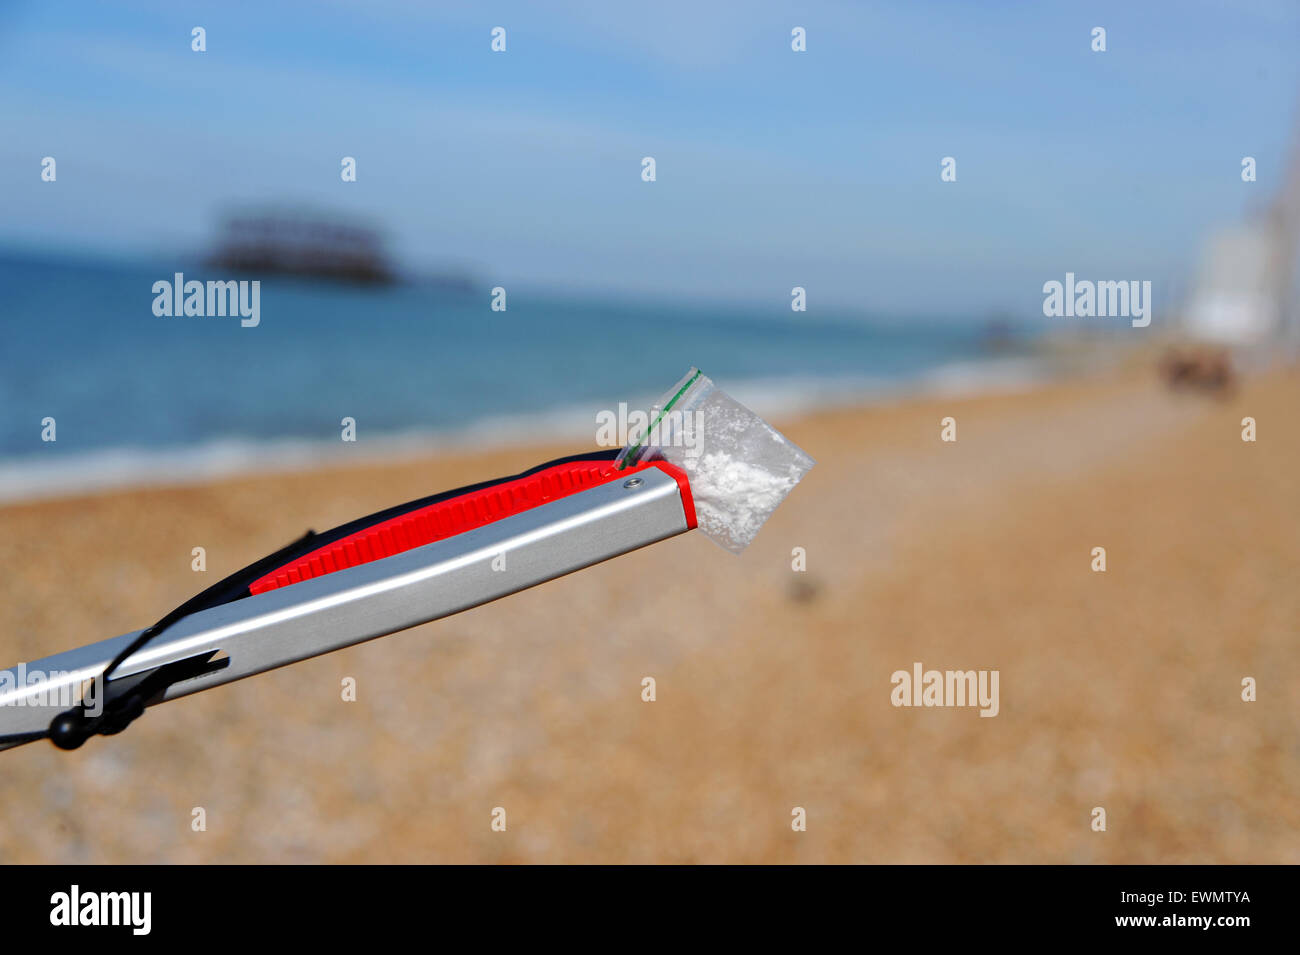 Brighton UK 29 juin 2015 - un petit sachet de poudre blanche suspecte à la drogue peut-être trouvés sur la plage de Brighton ce matin pendant le Grand nettoyage de plage Banque D'Images